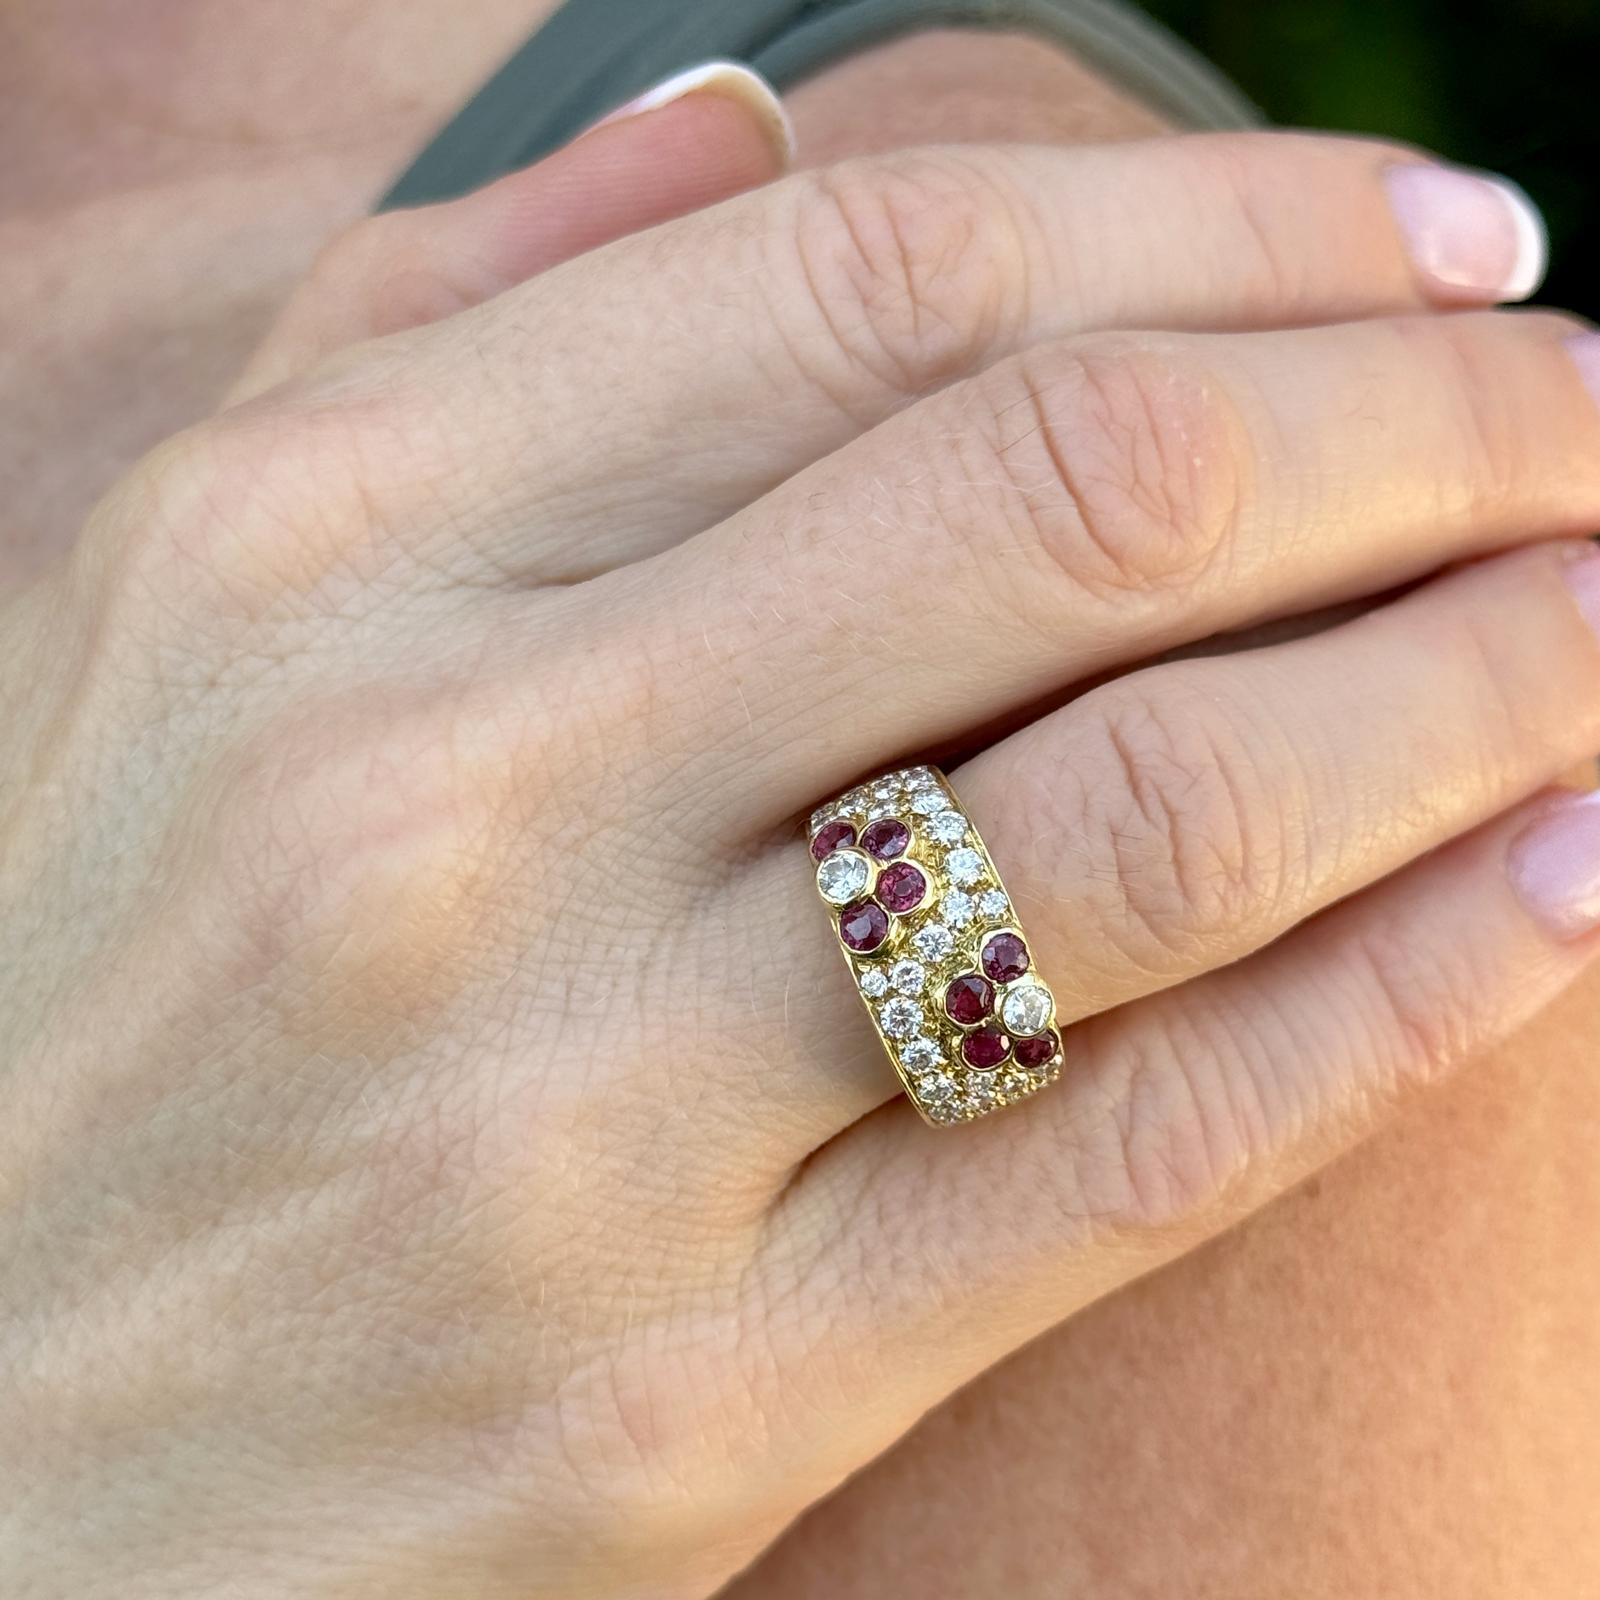 Der moderne Ring aus 18-karätigem Gelbgold im floralen Diamant-Rubin-Design ist ein atemberaubendes Schmuckstück, das Eleganz und zeitgenössisches Flair nahtlos miteinander verbindet. Die 31 echten Diamanten und 8 Rubine sind sorgfältig in das